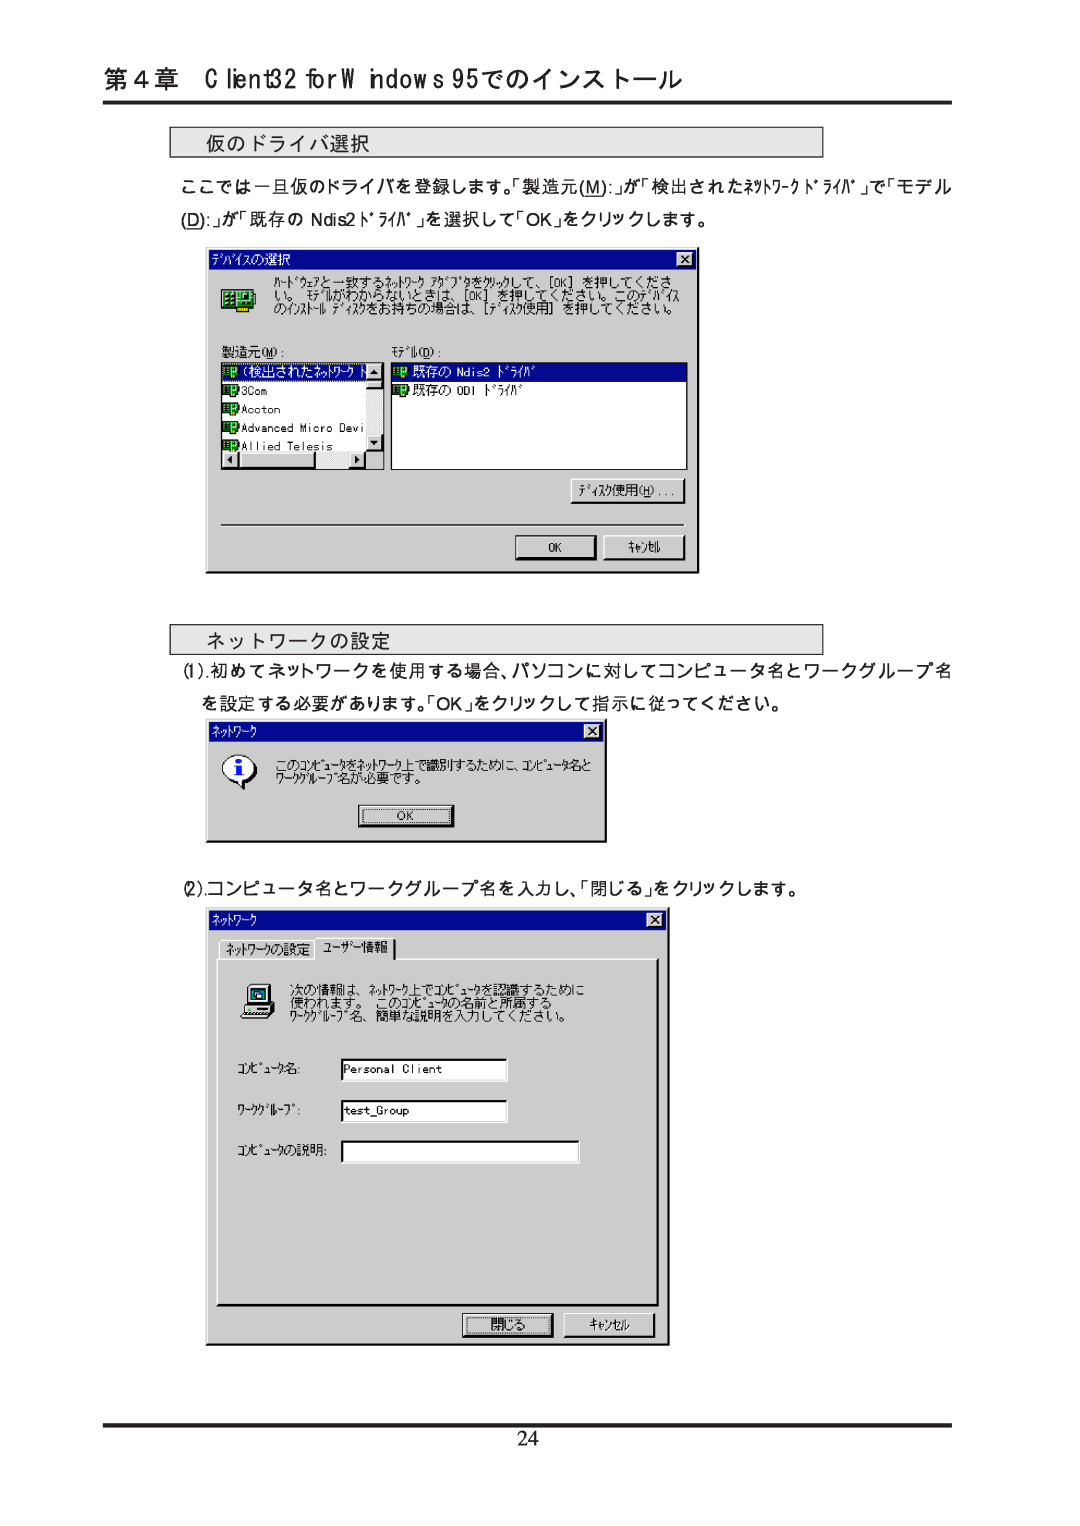 Ratoc Systems REX-R280 第４章 Client32 for Windows 95でのインストール, 仮のドライバ選択, ネットワークの設定, D」が「既存の Ndis2 ﾄﾞﾗｲﾊﾞ」を選択して「OK」をクリックします。 